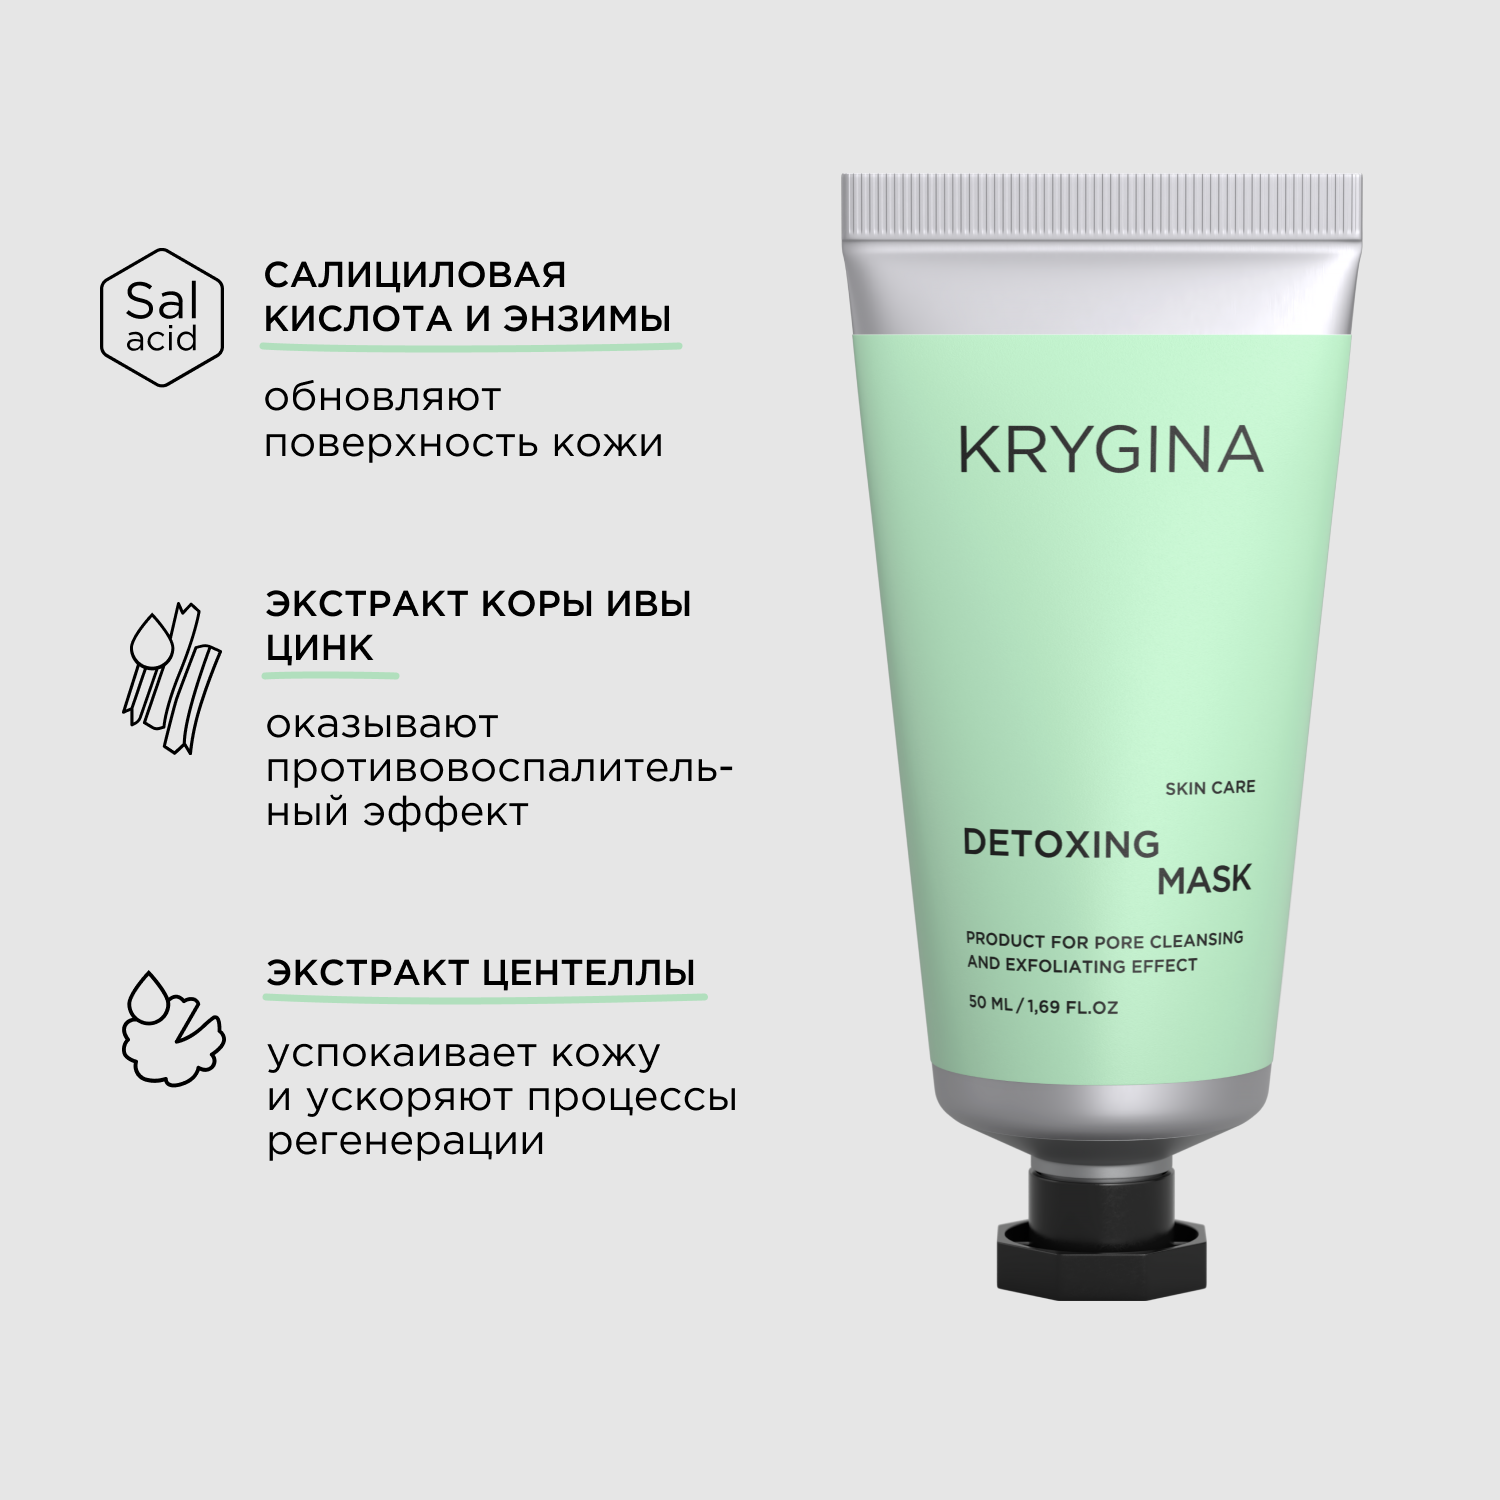 KRYGINA cosmetics Маска для очищения и обновления кожи DETOXING MASK 50мл